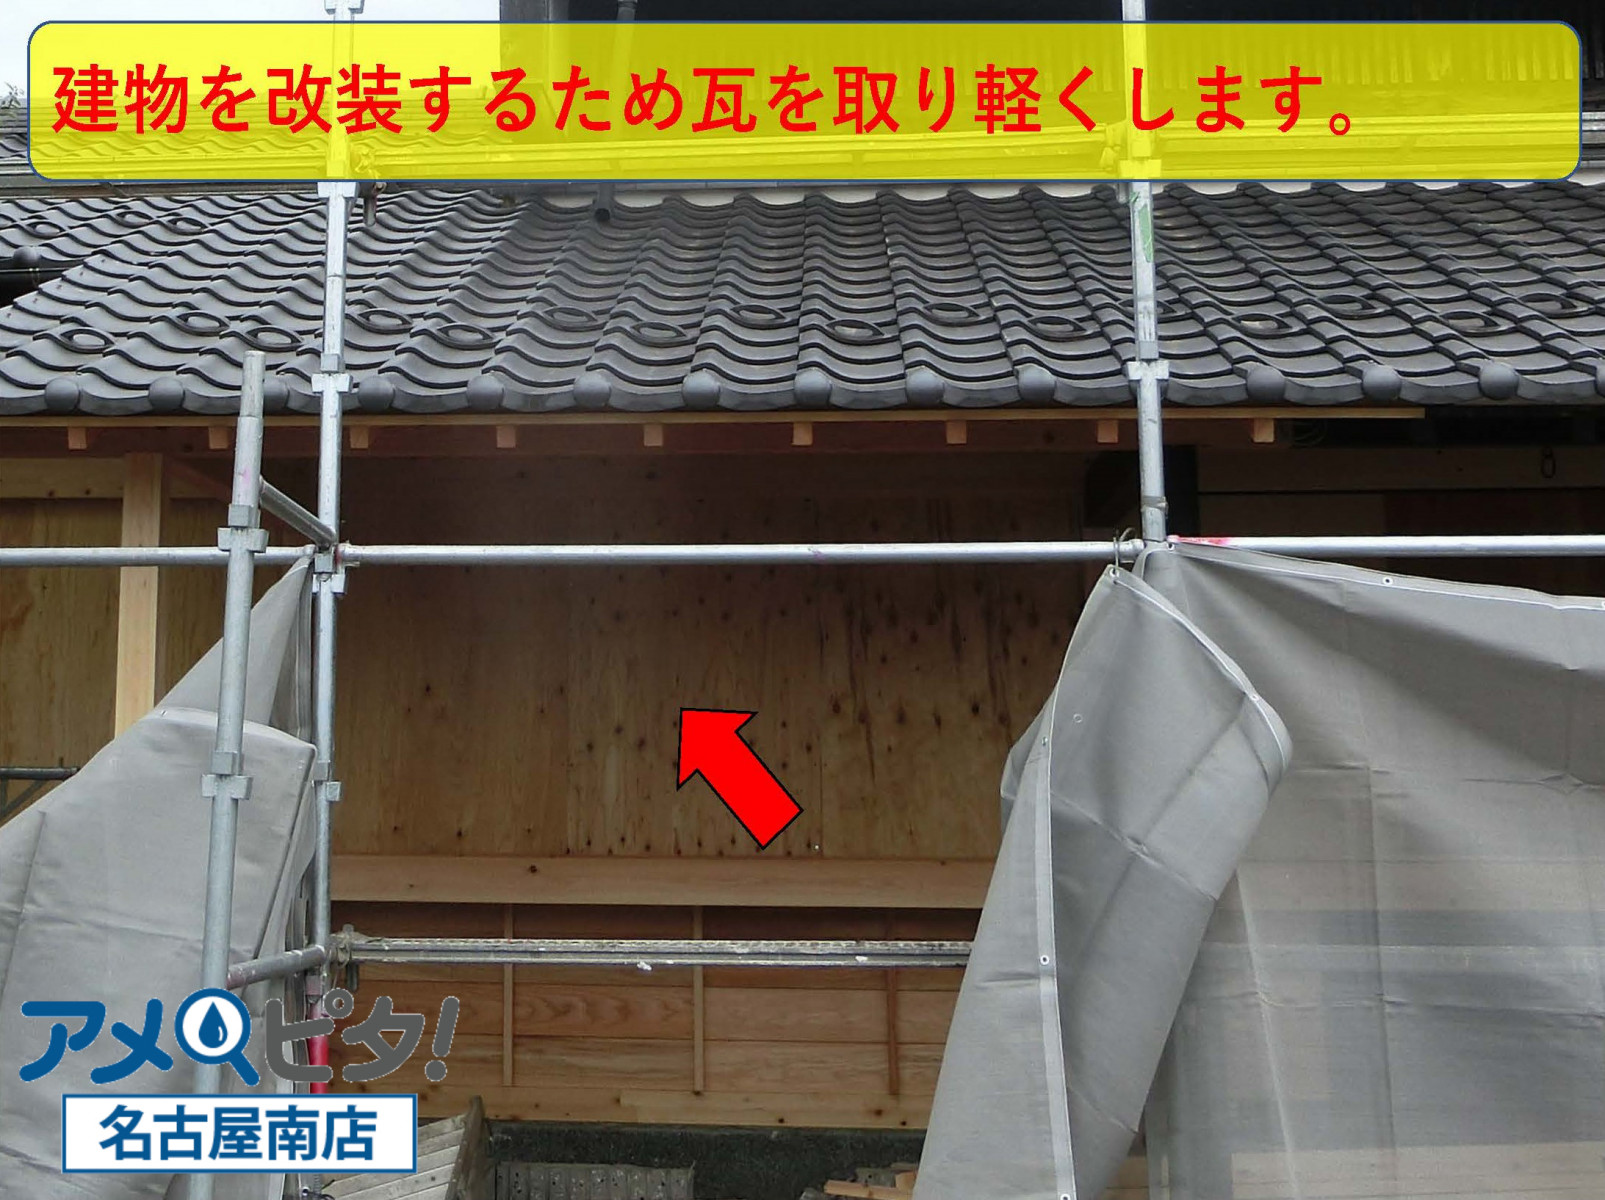 東浦町にて内装リフォームの為に重くなっている屋根瓦を取り外していきます